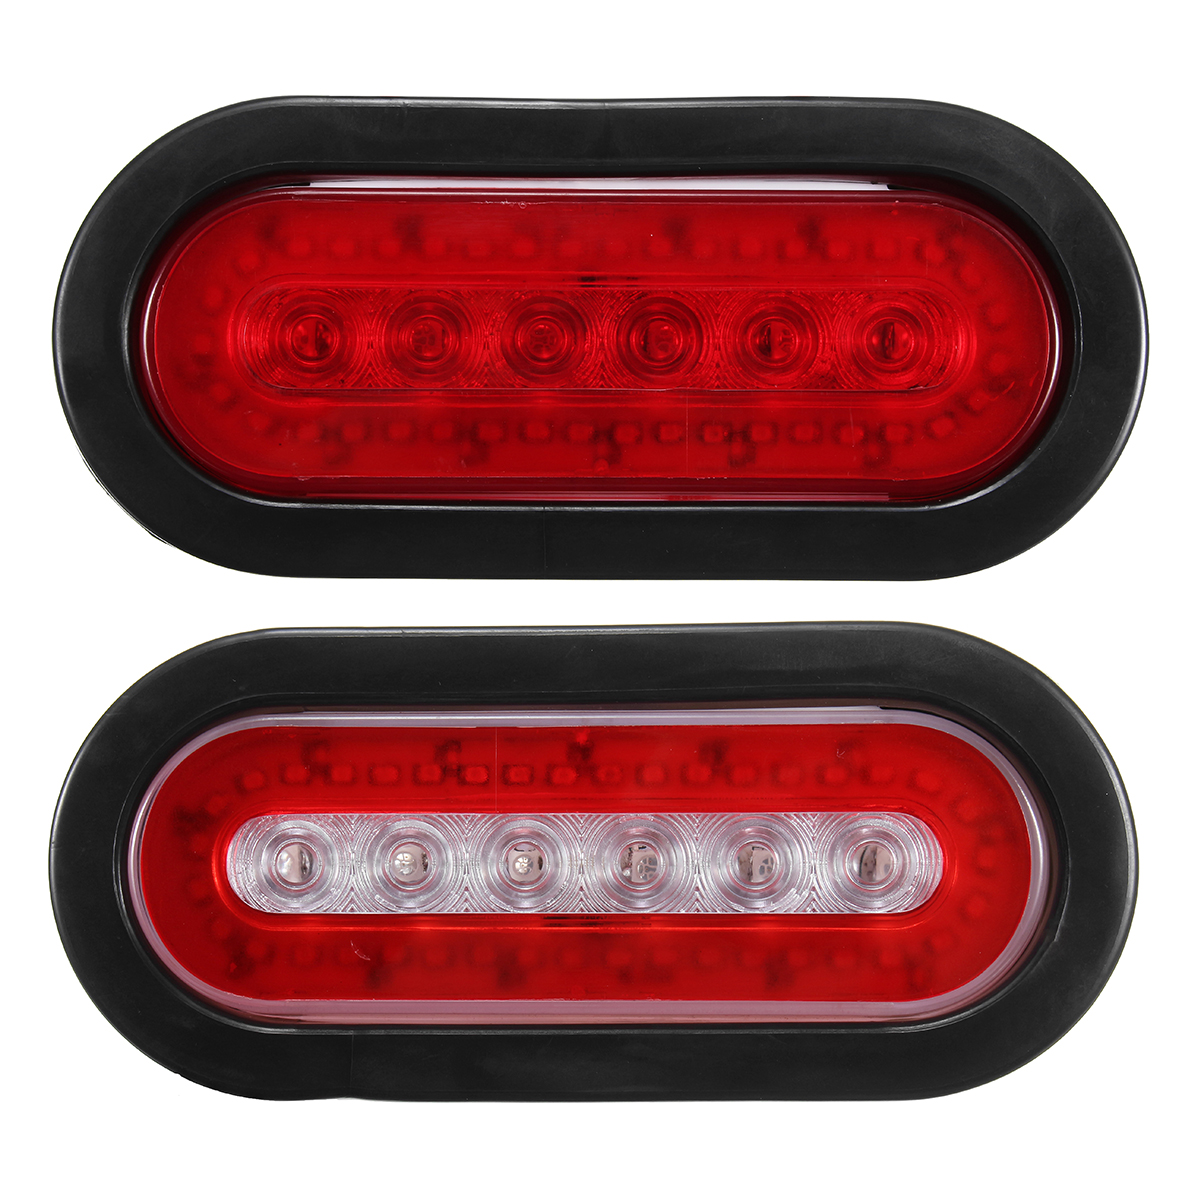 

12V 22LED Авто Красные задние задние огни Stop Индикаторные лампы для грузового прицепа Автоavan Van Lorry